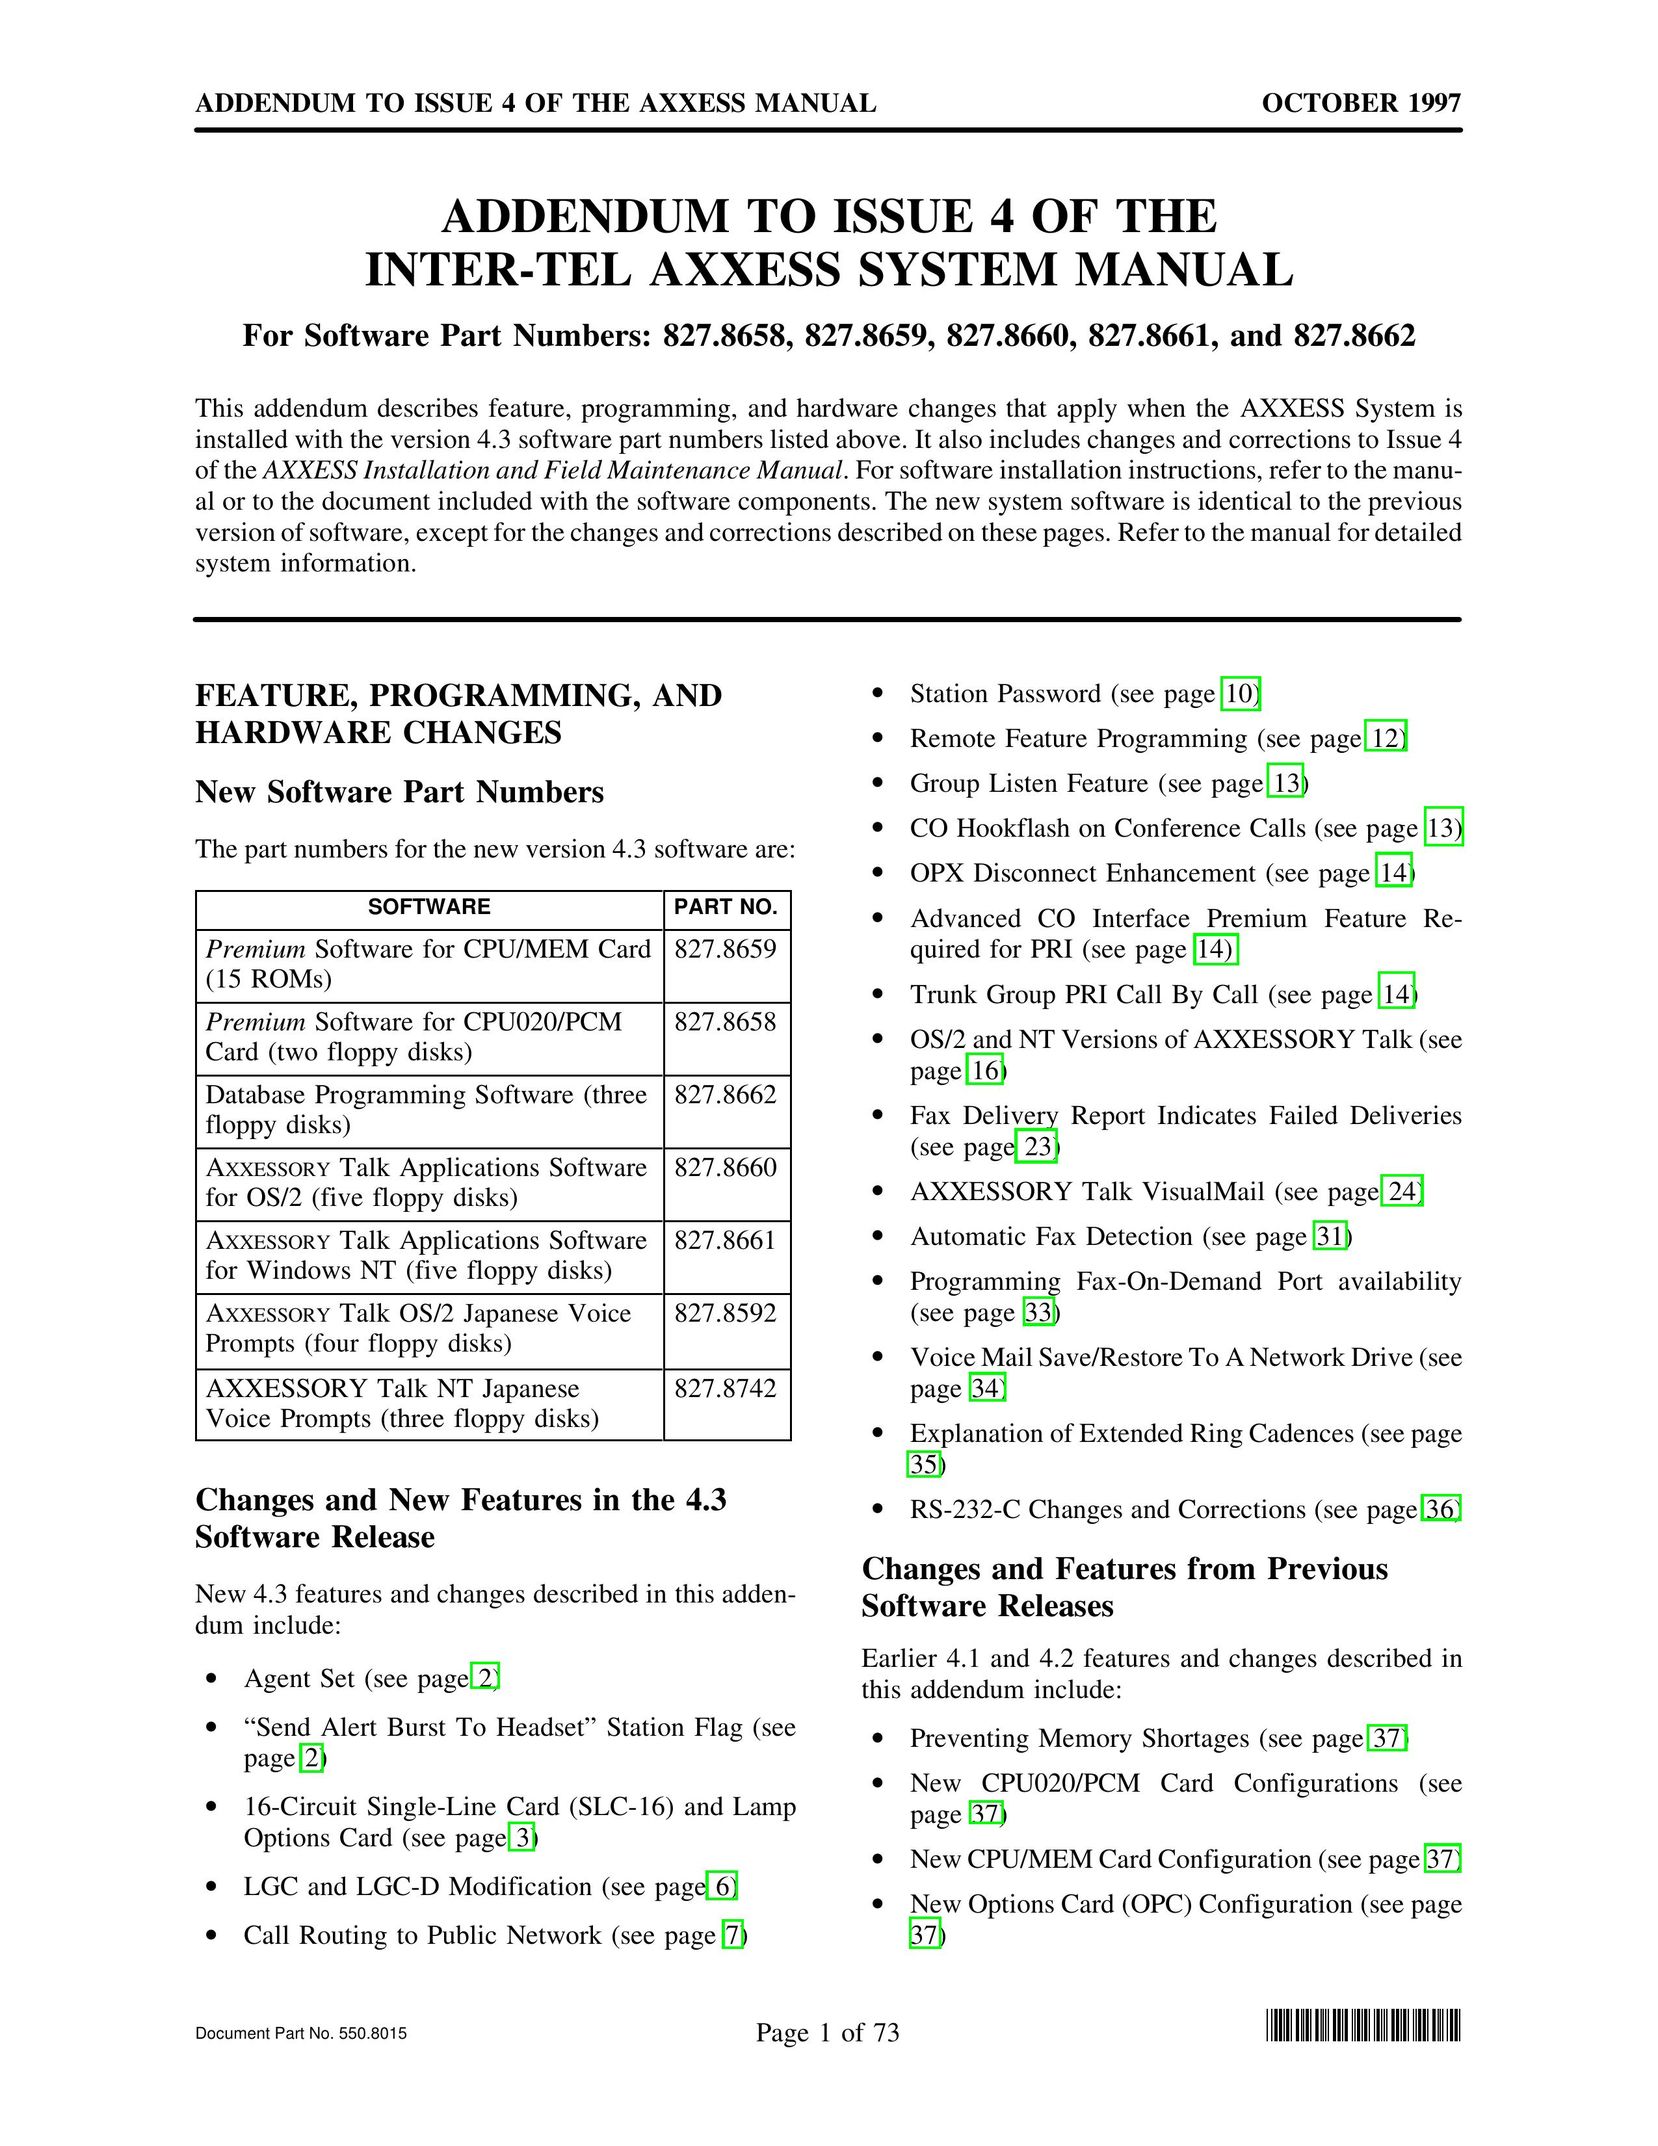 Inter-Tel 827.8659 Telephone User Manual